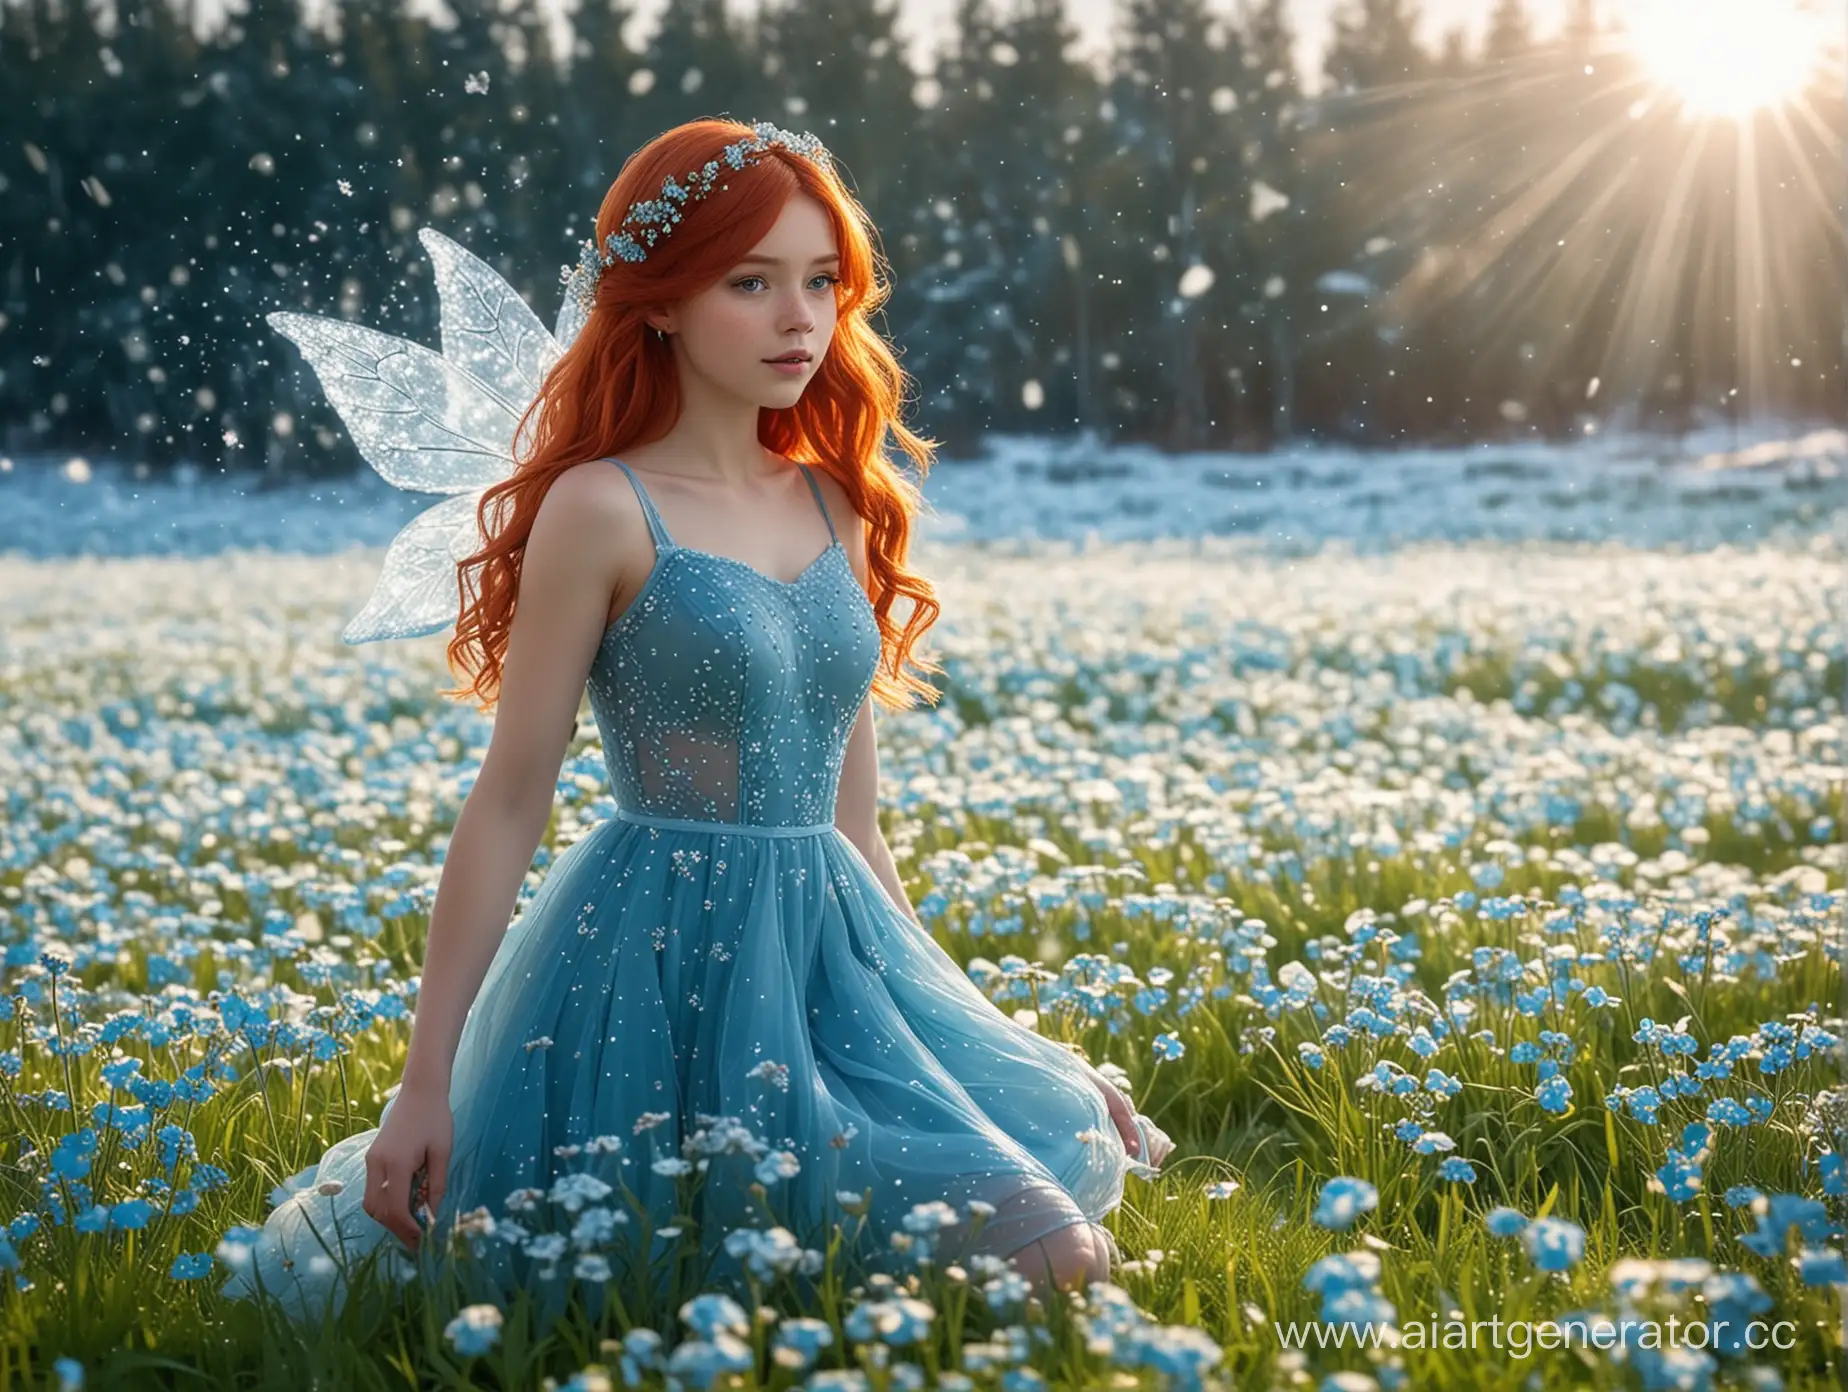 девушка, похожая на фею Незабудку из мультфильма ФЕИ , у девушки красные волосы и красное длинное платье без рукавов с геометрическим декольте , на фоне пейзаж льдины и снежинки и солнце и немного зеленой травы.